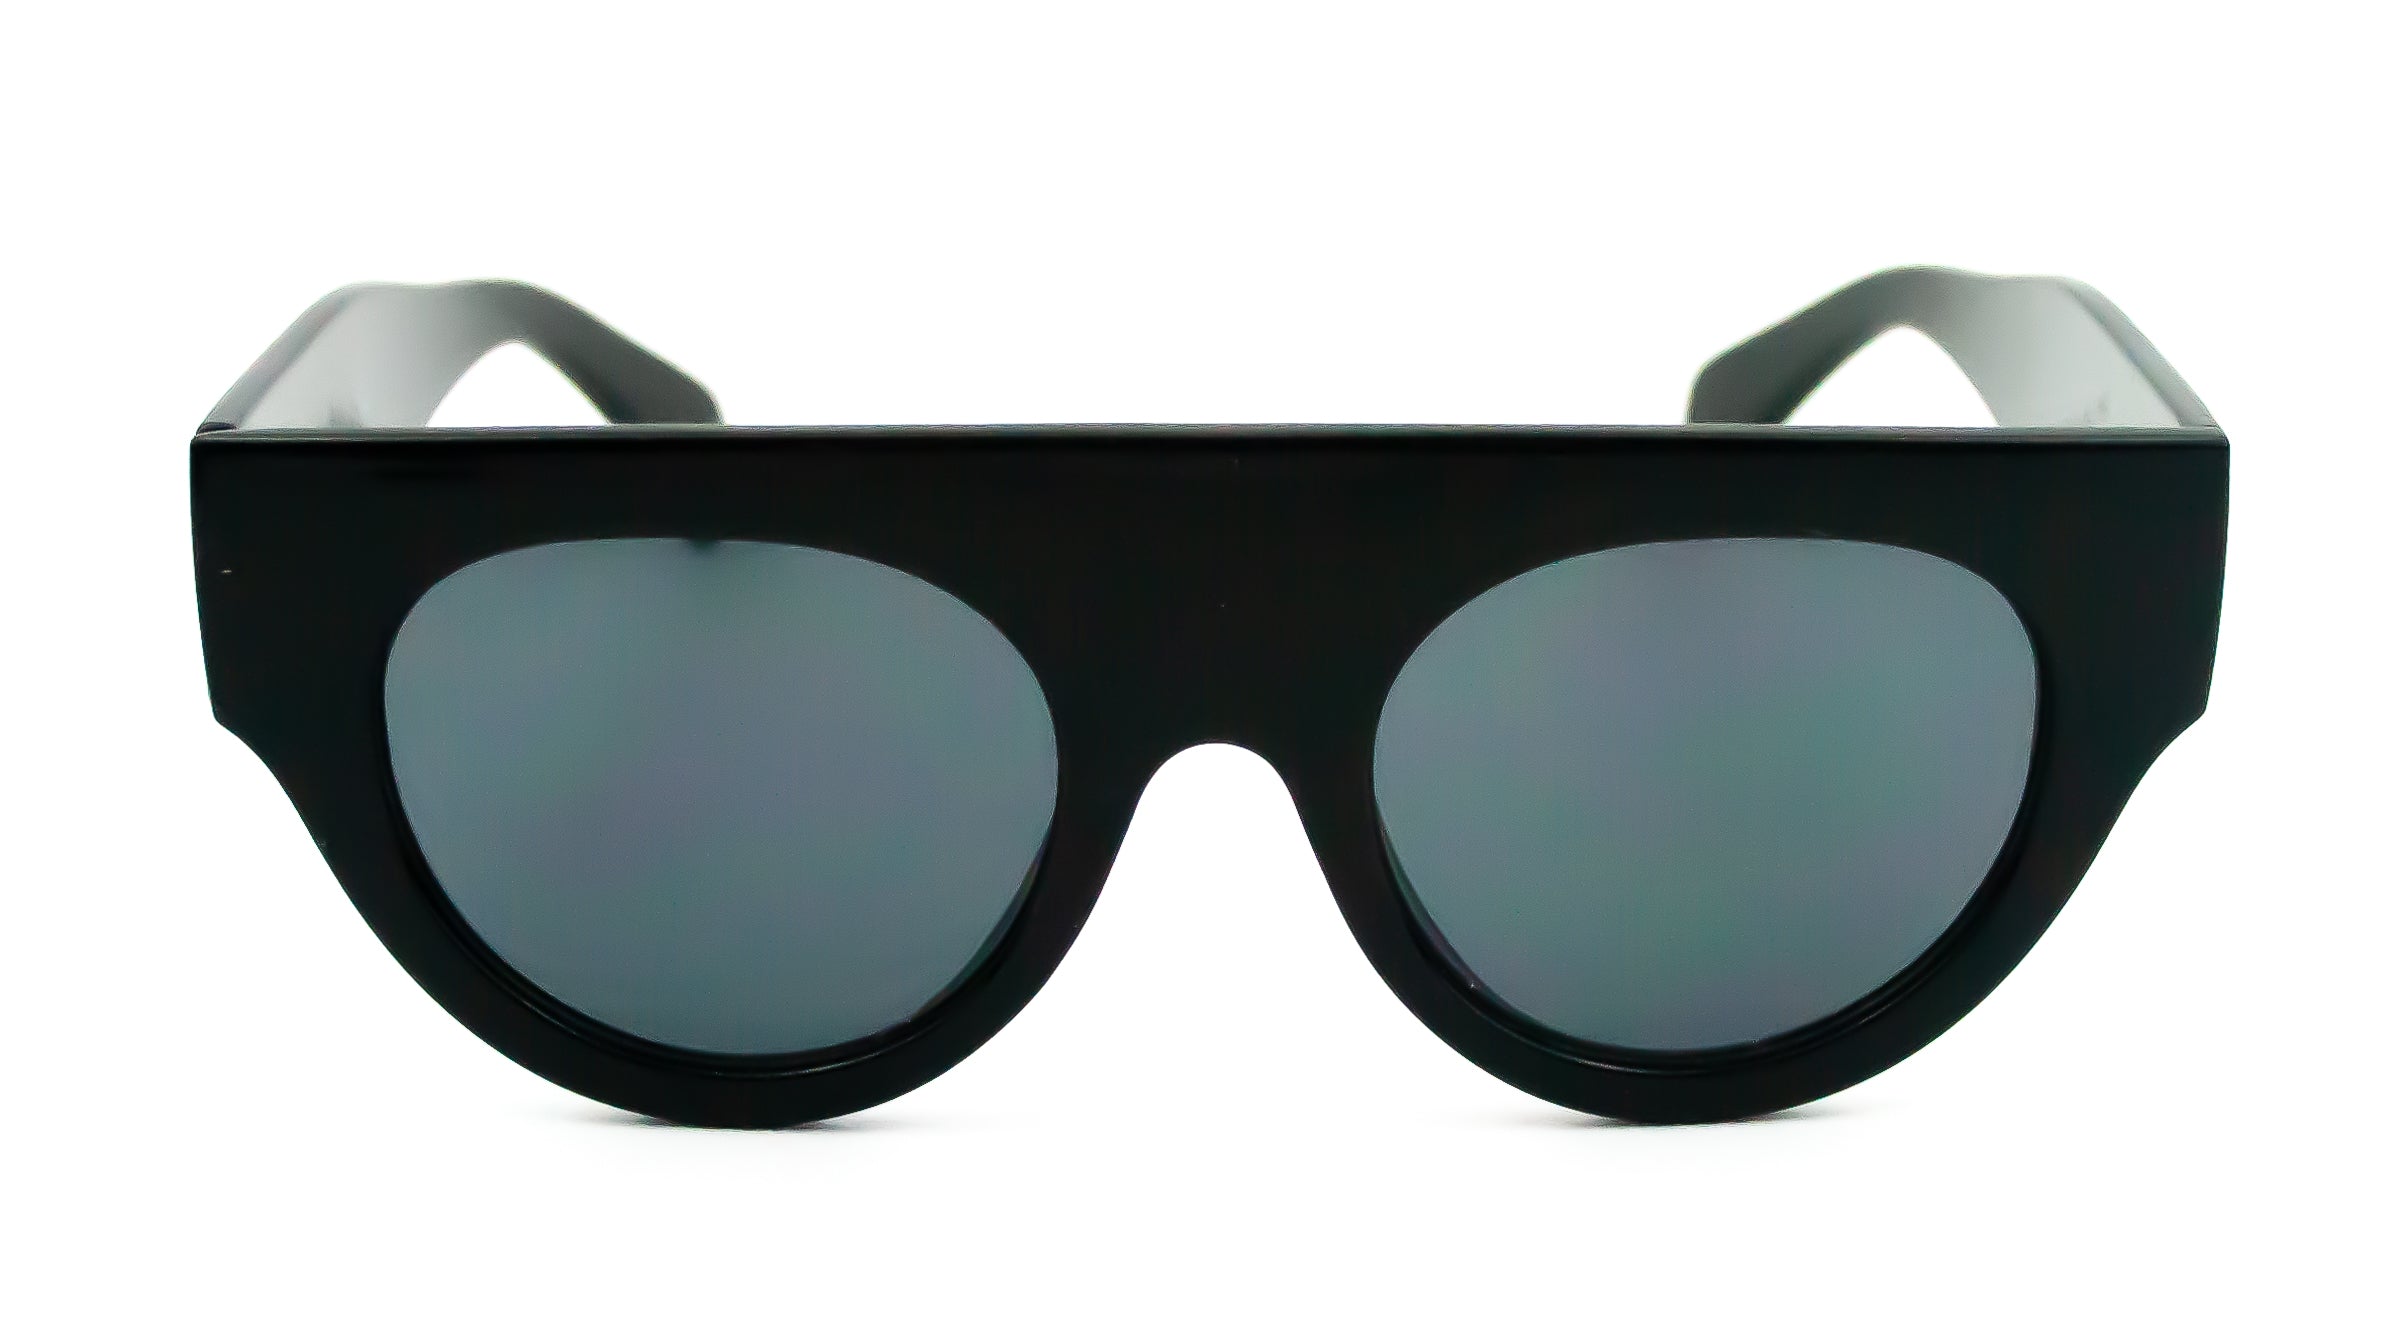 EPIC Modern / Futuristic / Wraparound / Shield Sunglasses